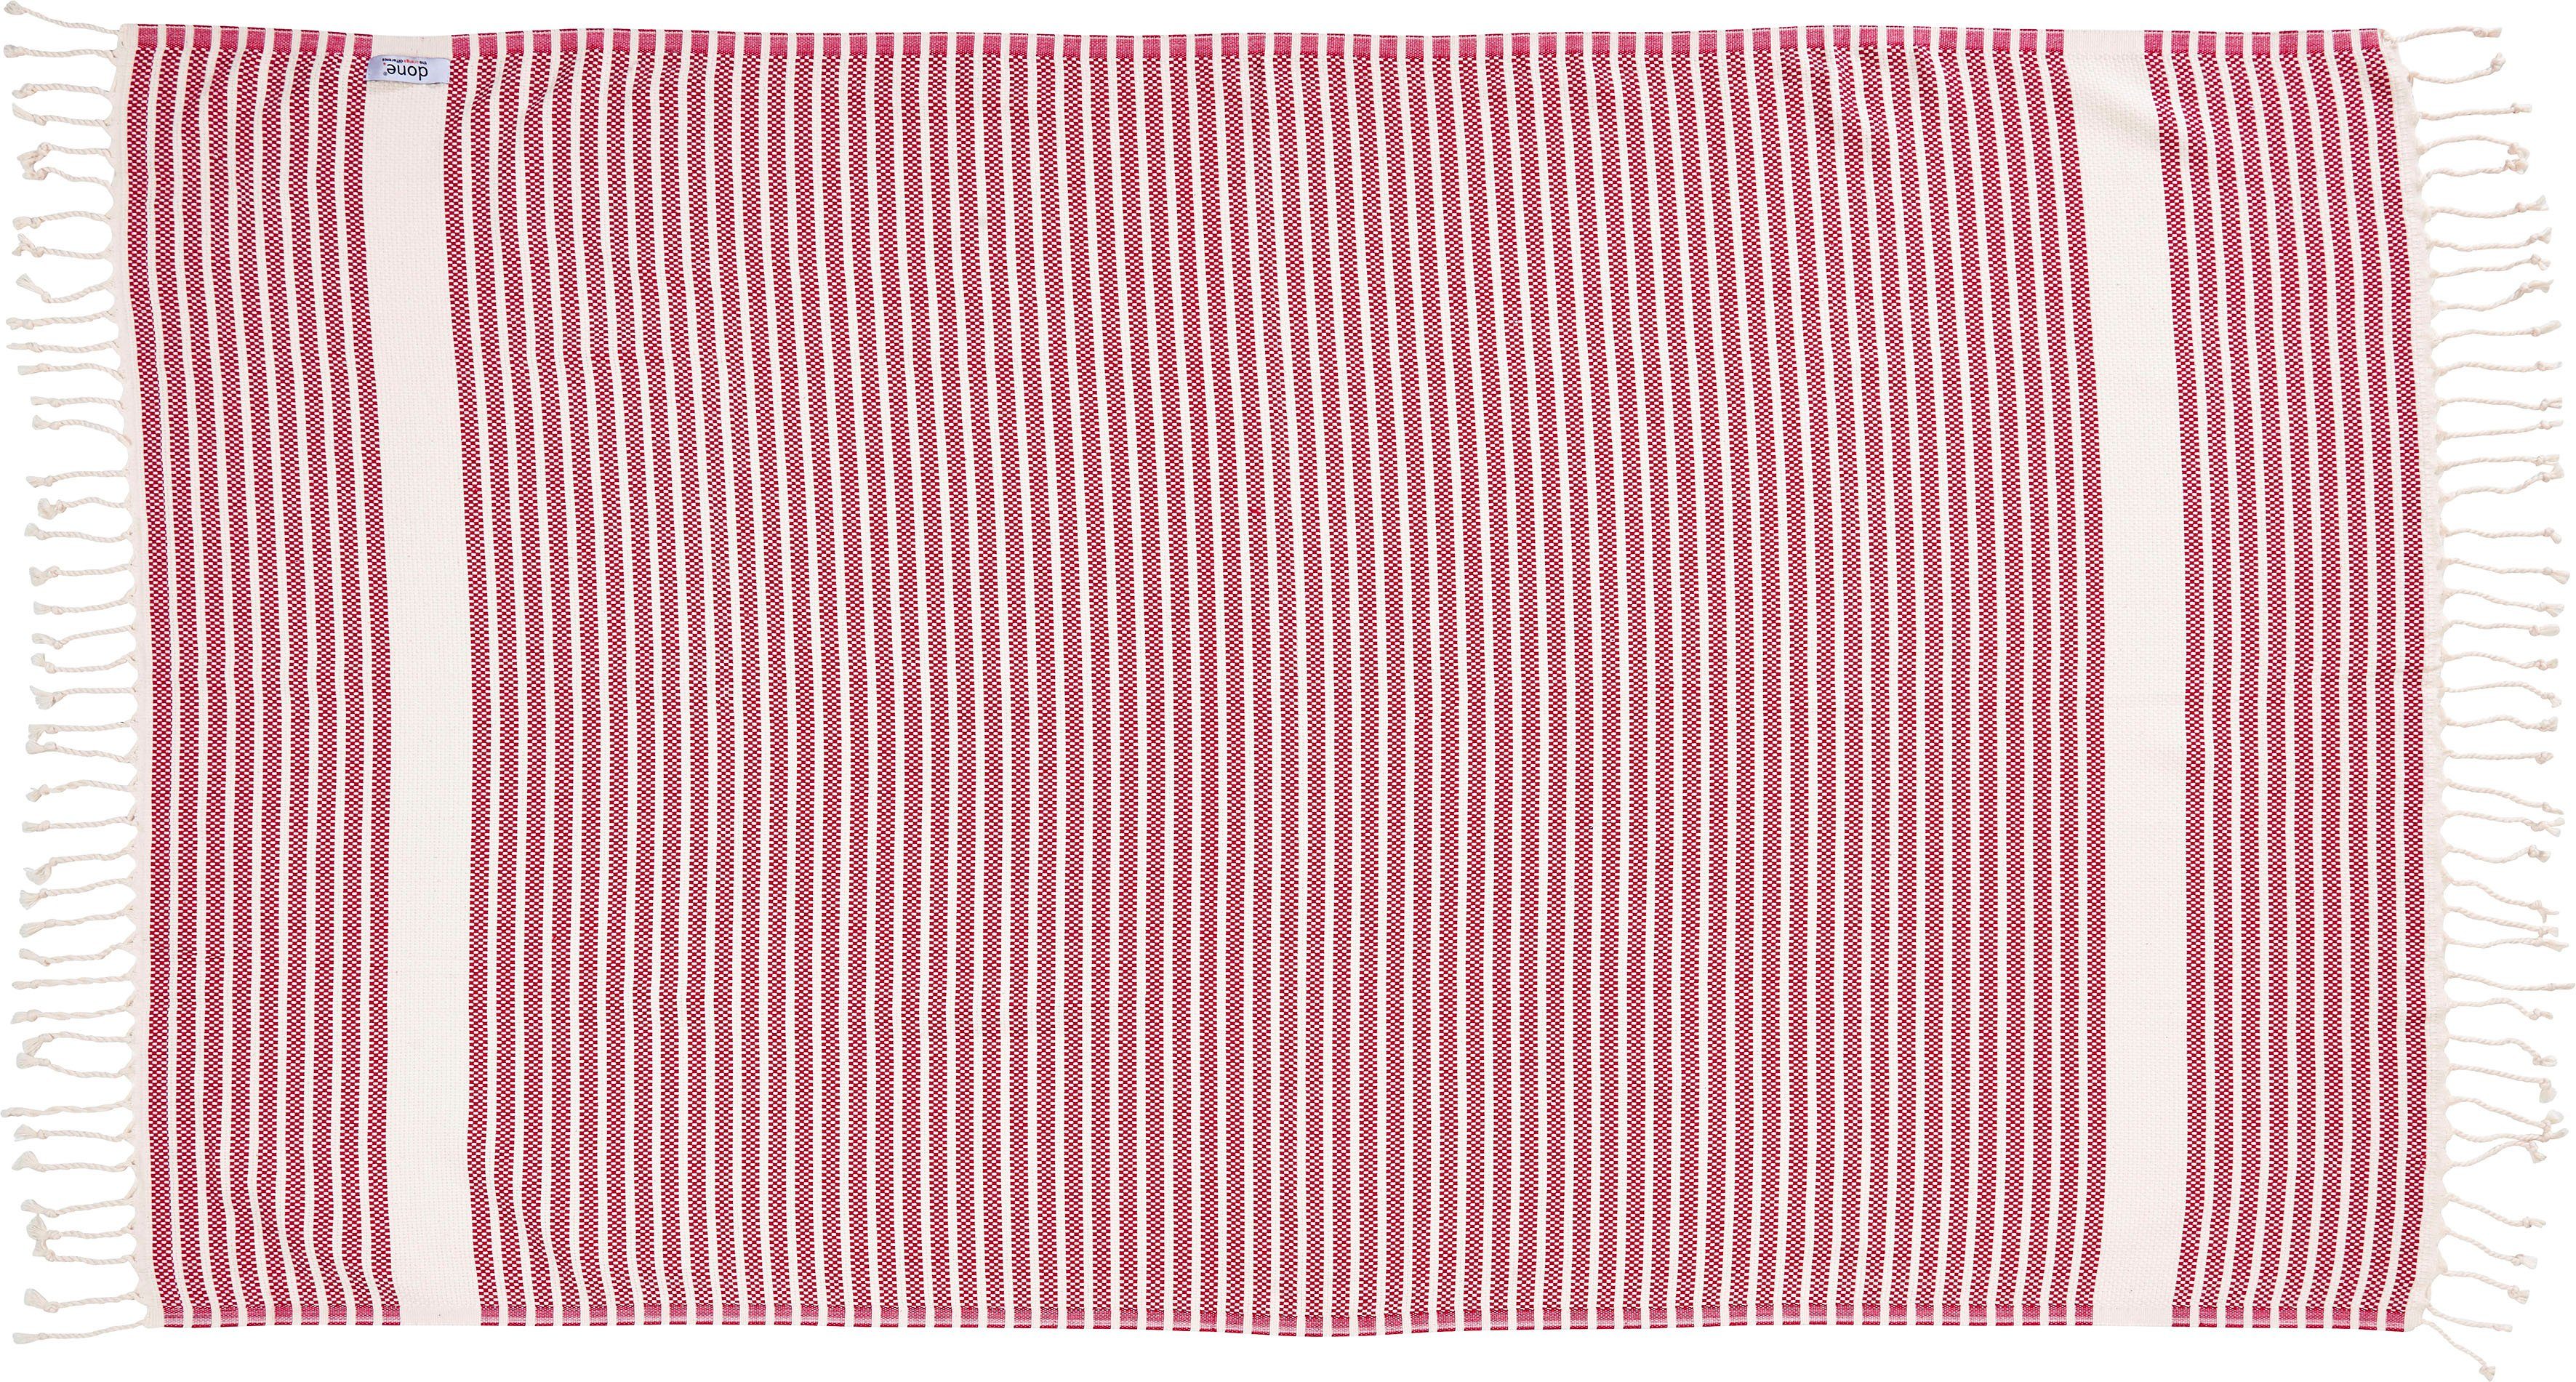 Plaid mit done.®, Stripes, Plaid pink/beige geknoteten Leichtes Fransen Lounge